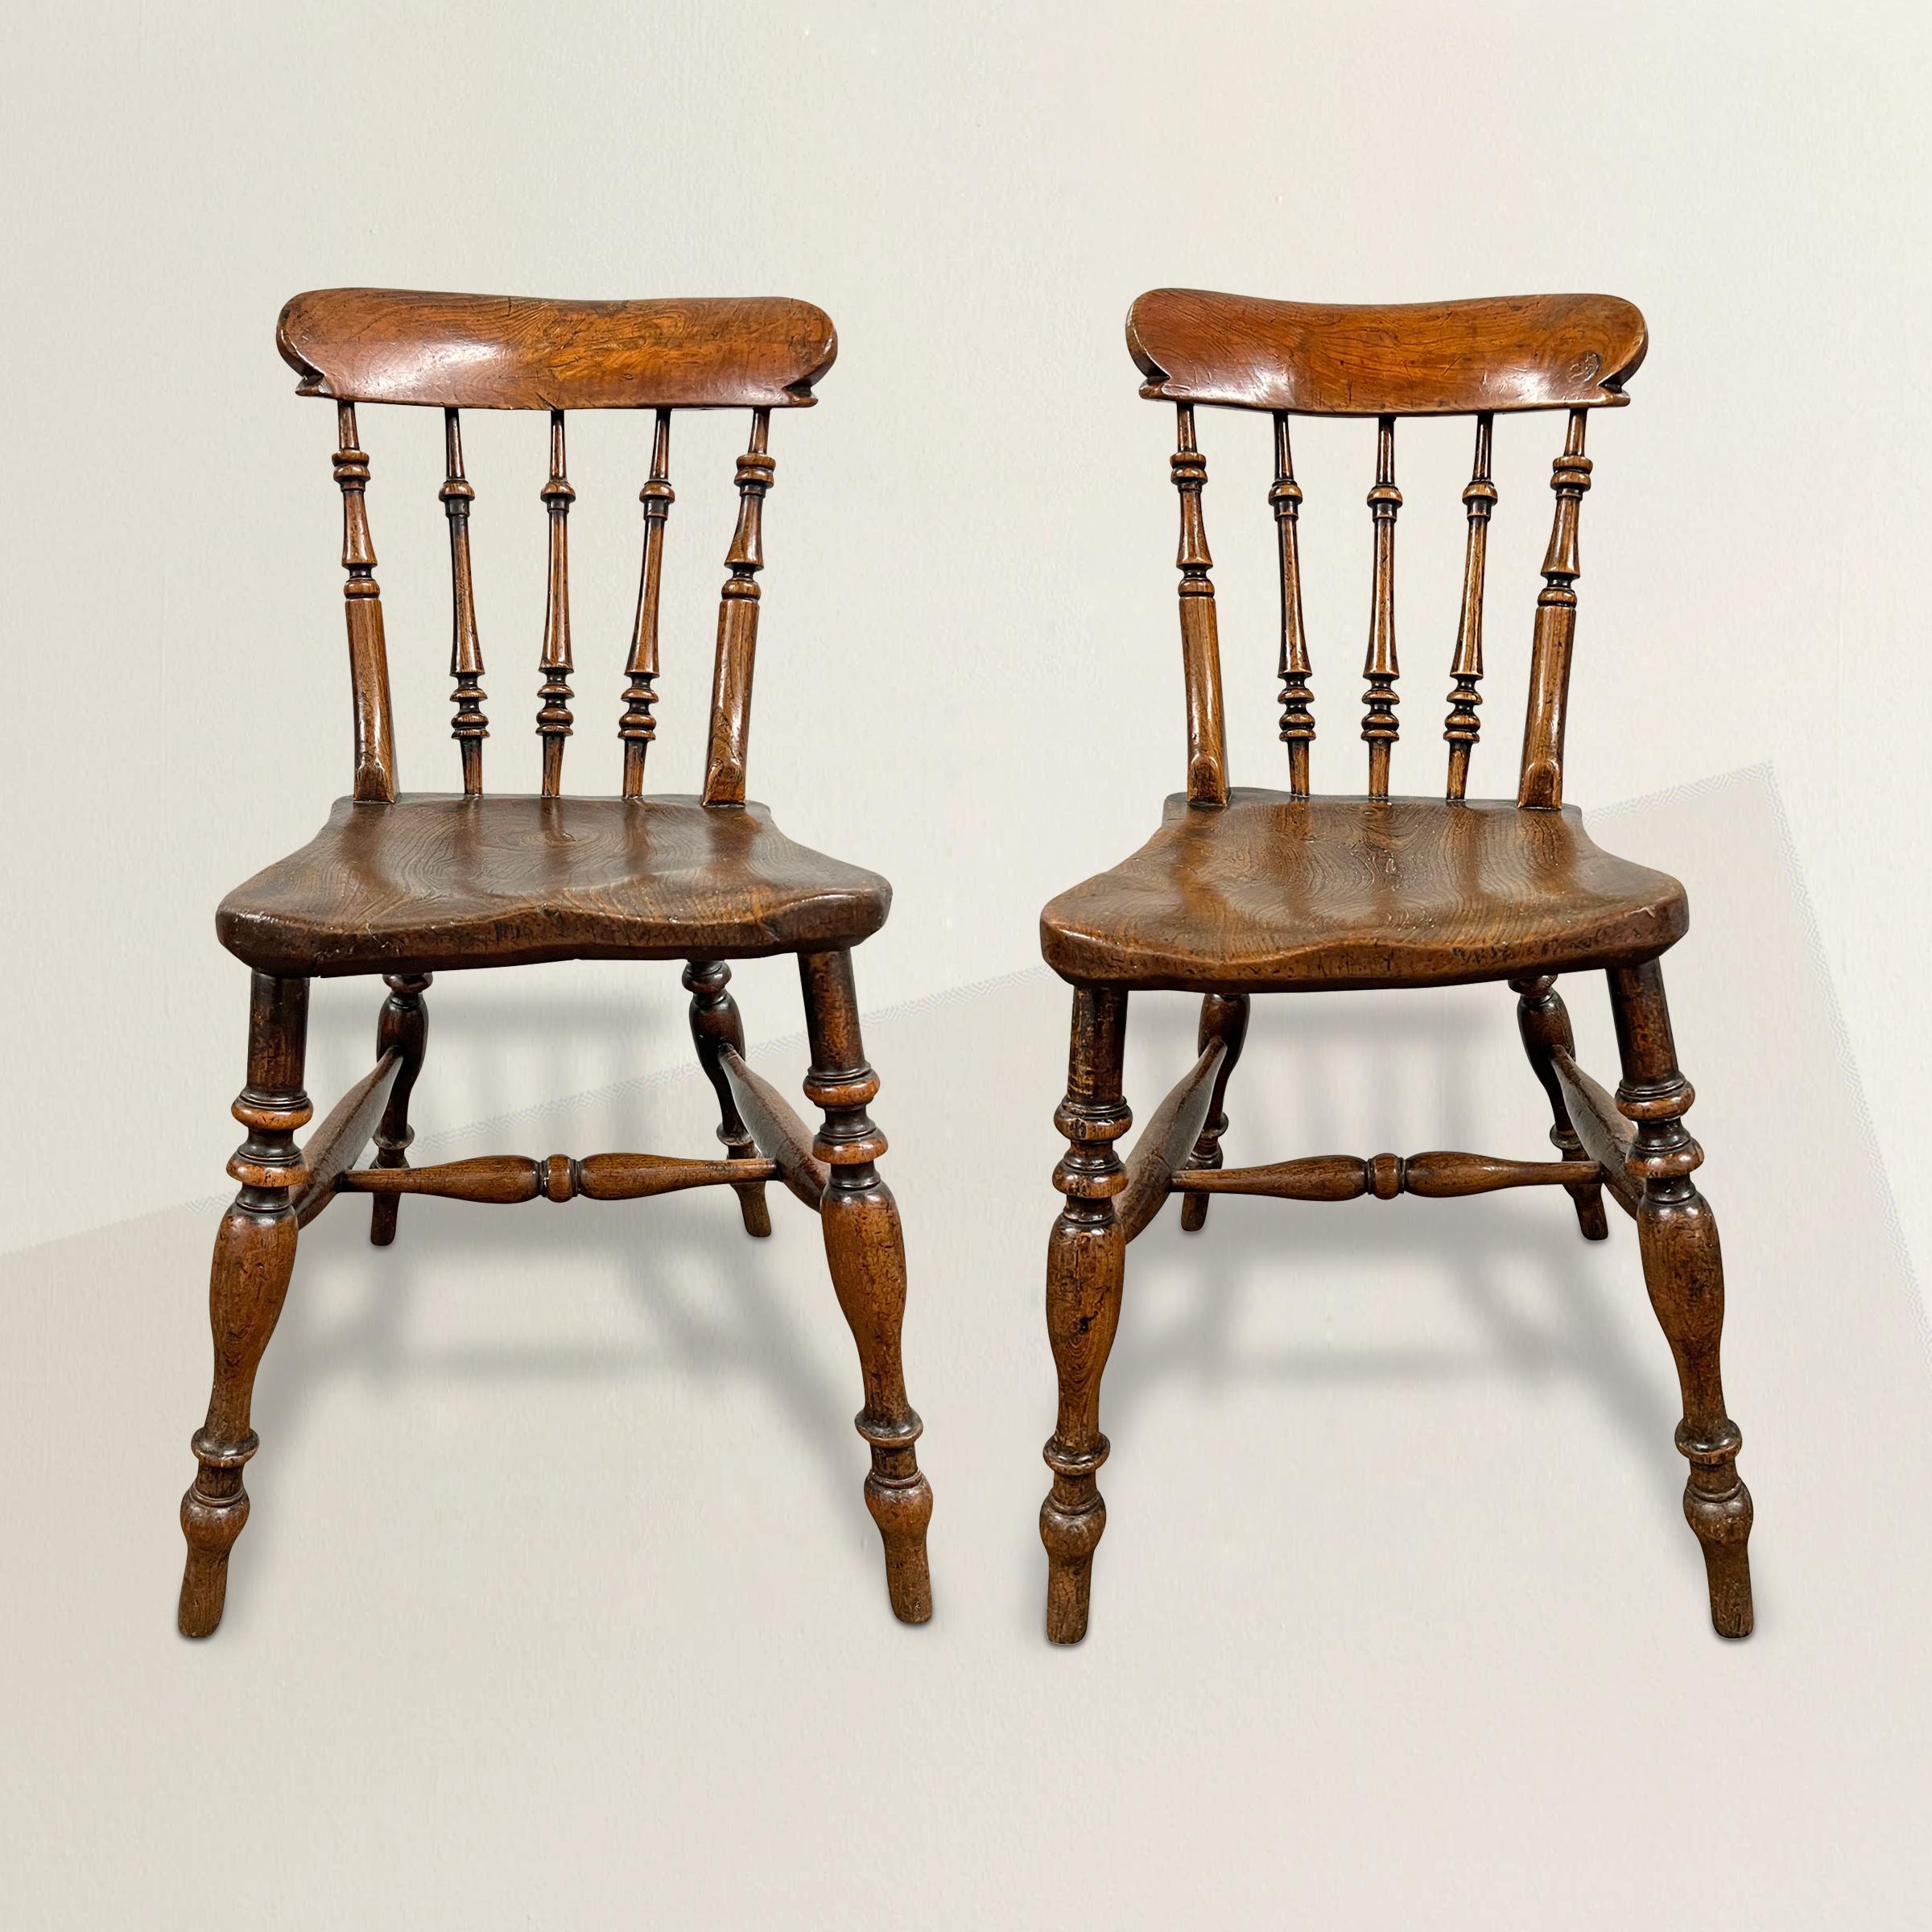 Ein atemberaubendes Paar englischer Beistellstühle aus Ulmenholz aus dem frühen 19. Jahrhundert, jeweils mit Sitzen aus massivem Ulmenholz, die von gedrechselten Beinen und Streckern getragen werden, und Rückenlehnen mit gedrechselten Leisten, die